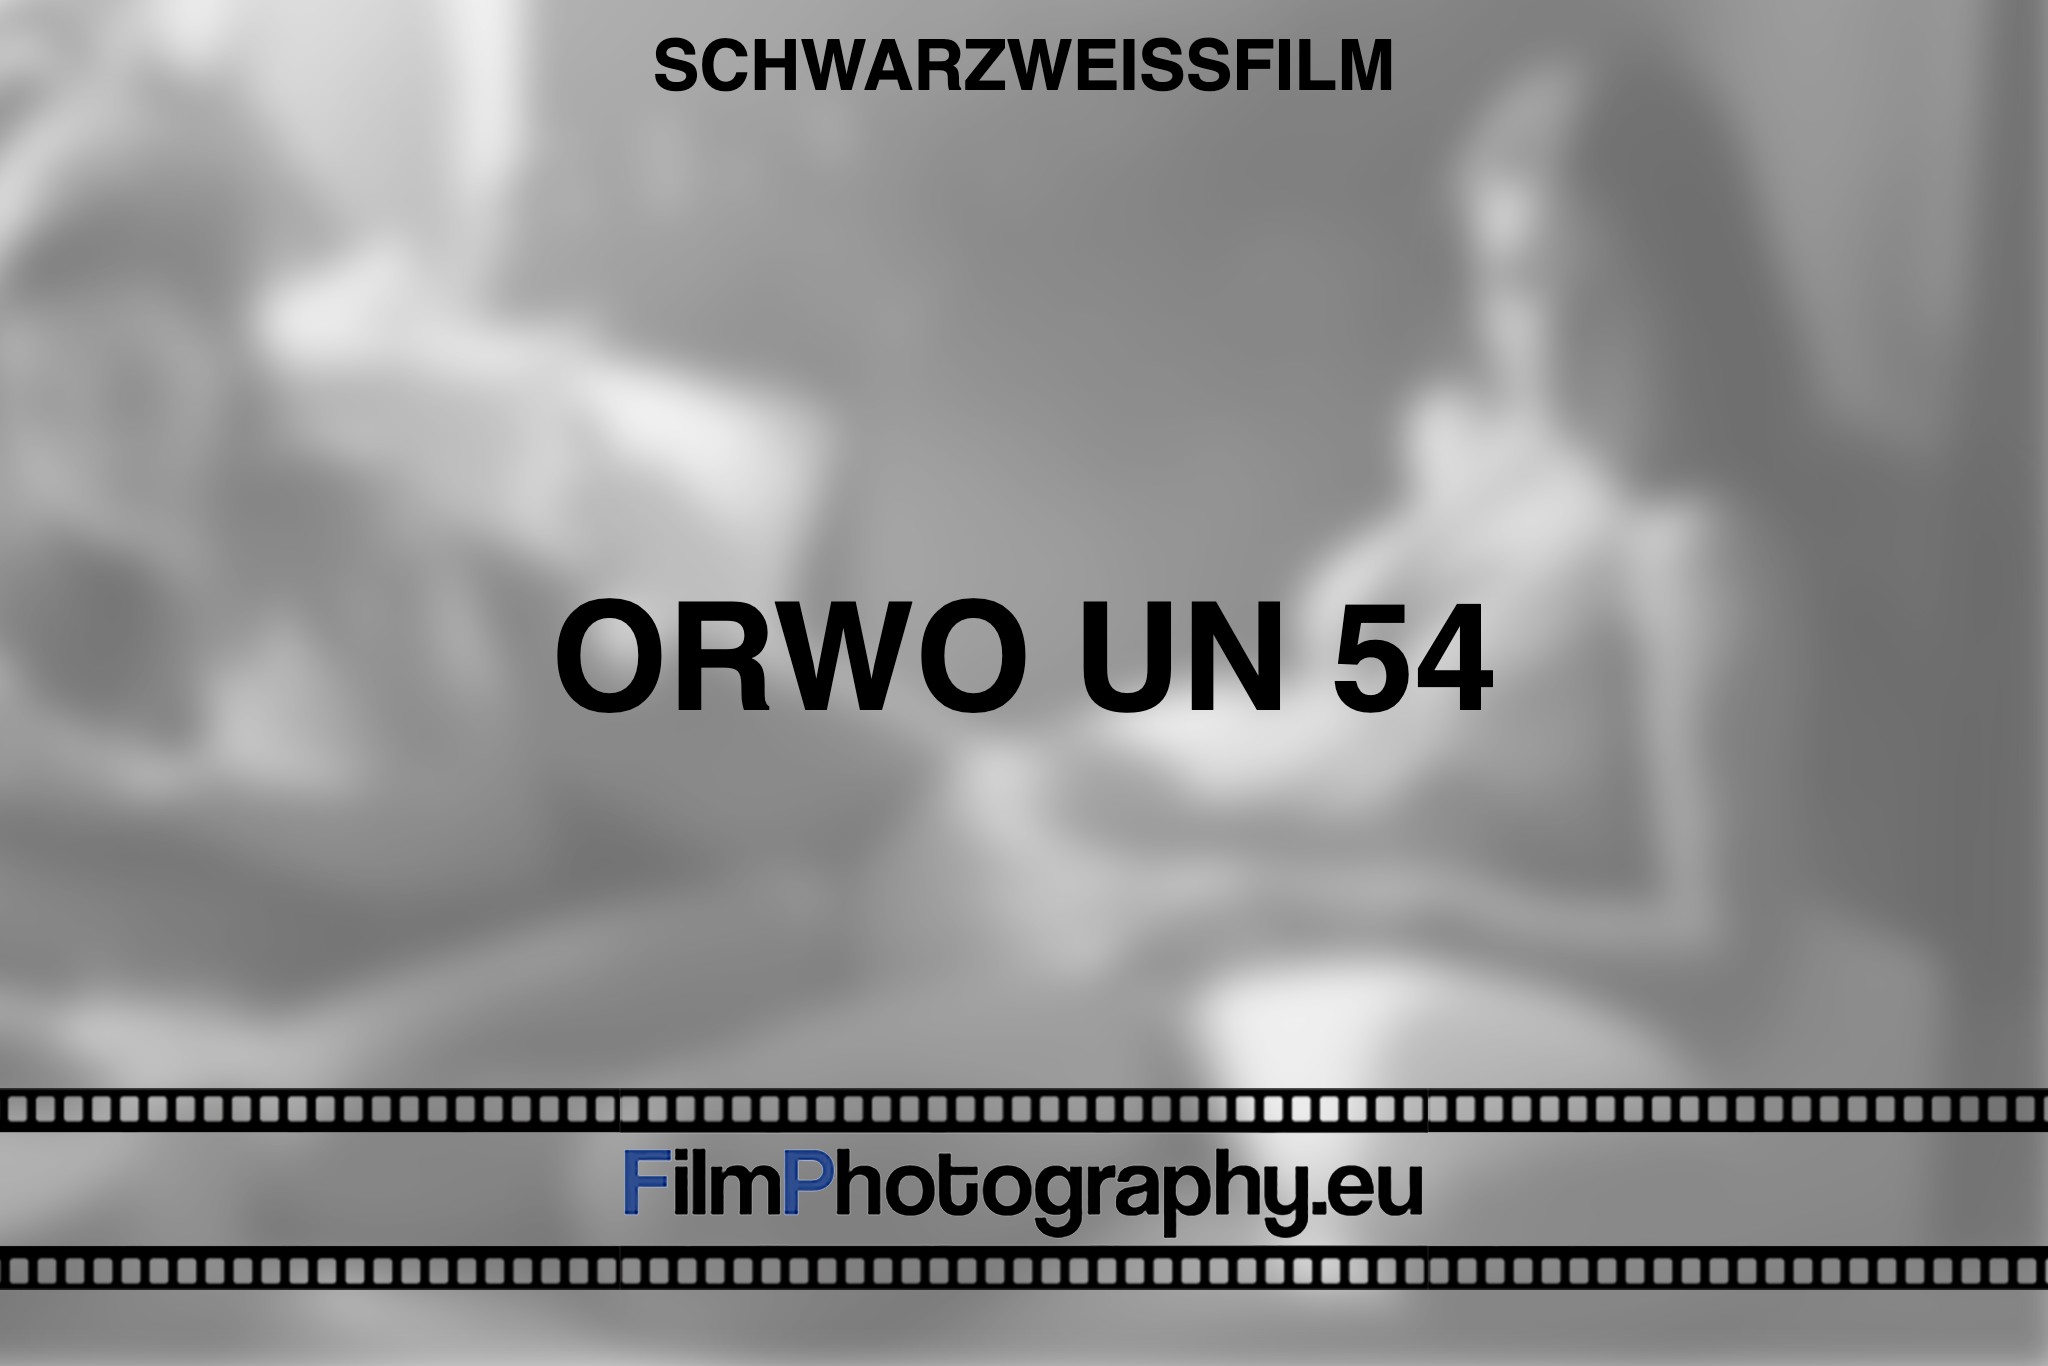 orwo-un-54-schwarzweißfilm-bnv